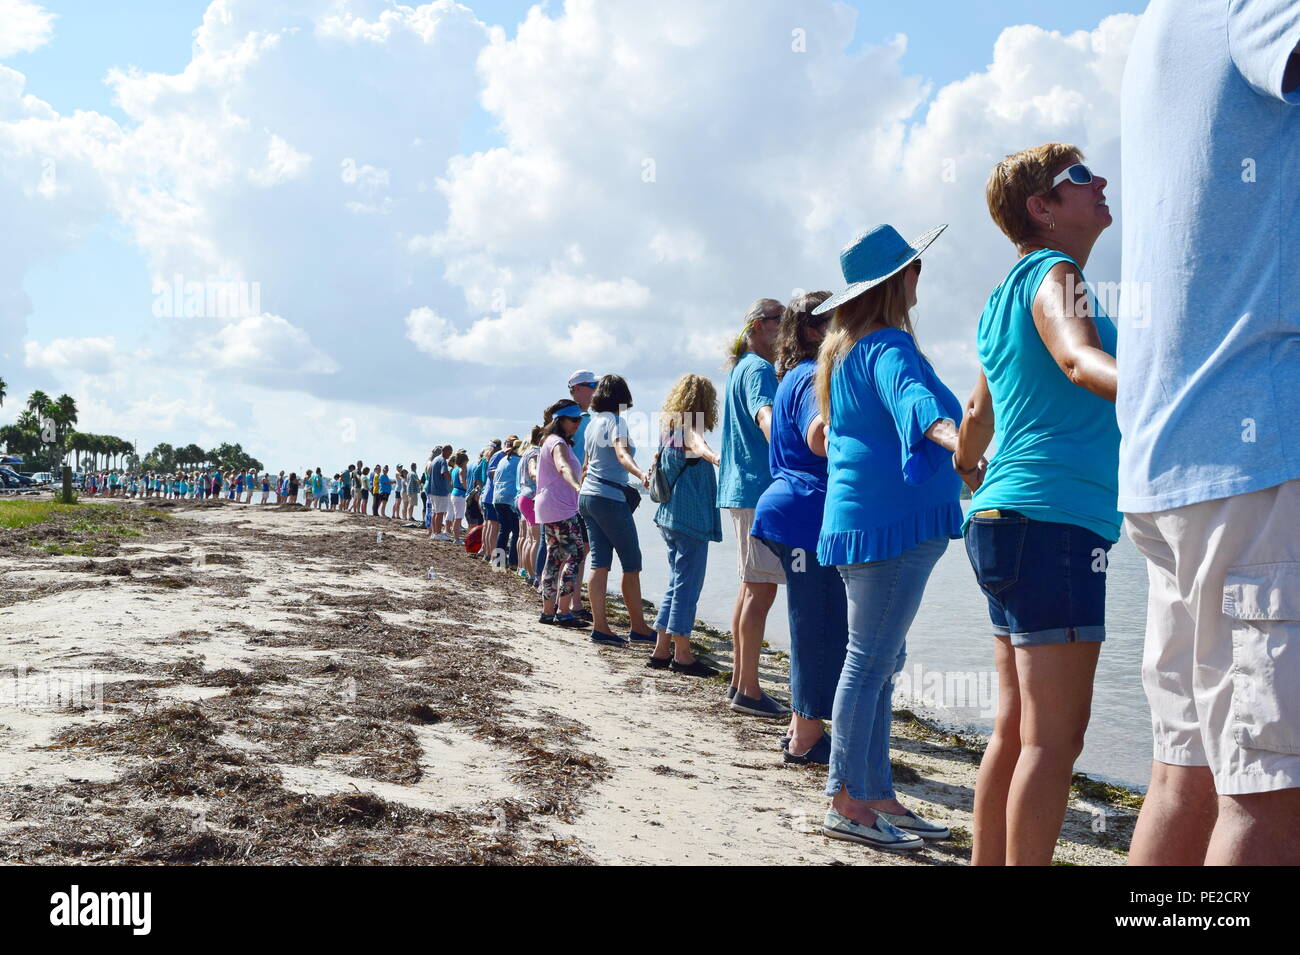 Hände entlang dem Wasser Veranstaltungen in SW Florida Bewusstsein für die Katastrophe von Red Tide und Algen unsere Gewässer zu heben, das Töten von Meerestieren, schädigen die Umwelt und die Gesundheit von Menschen. Stockfoto